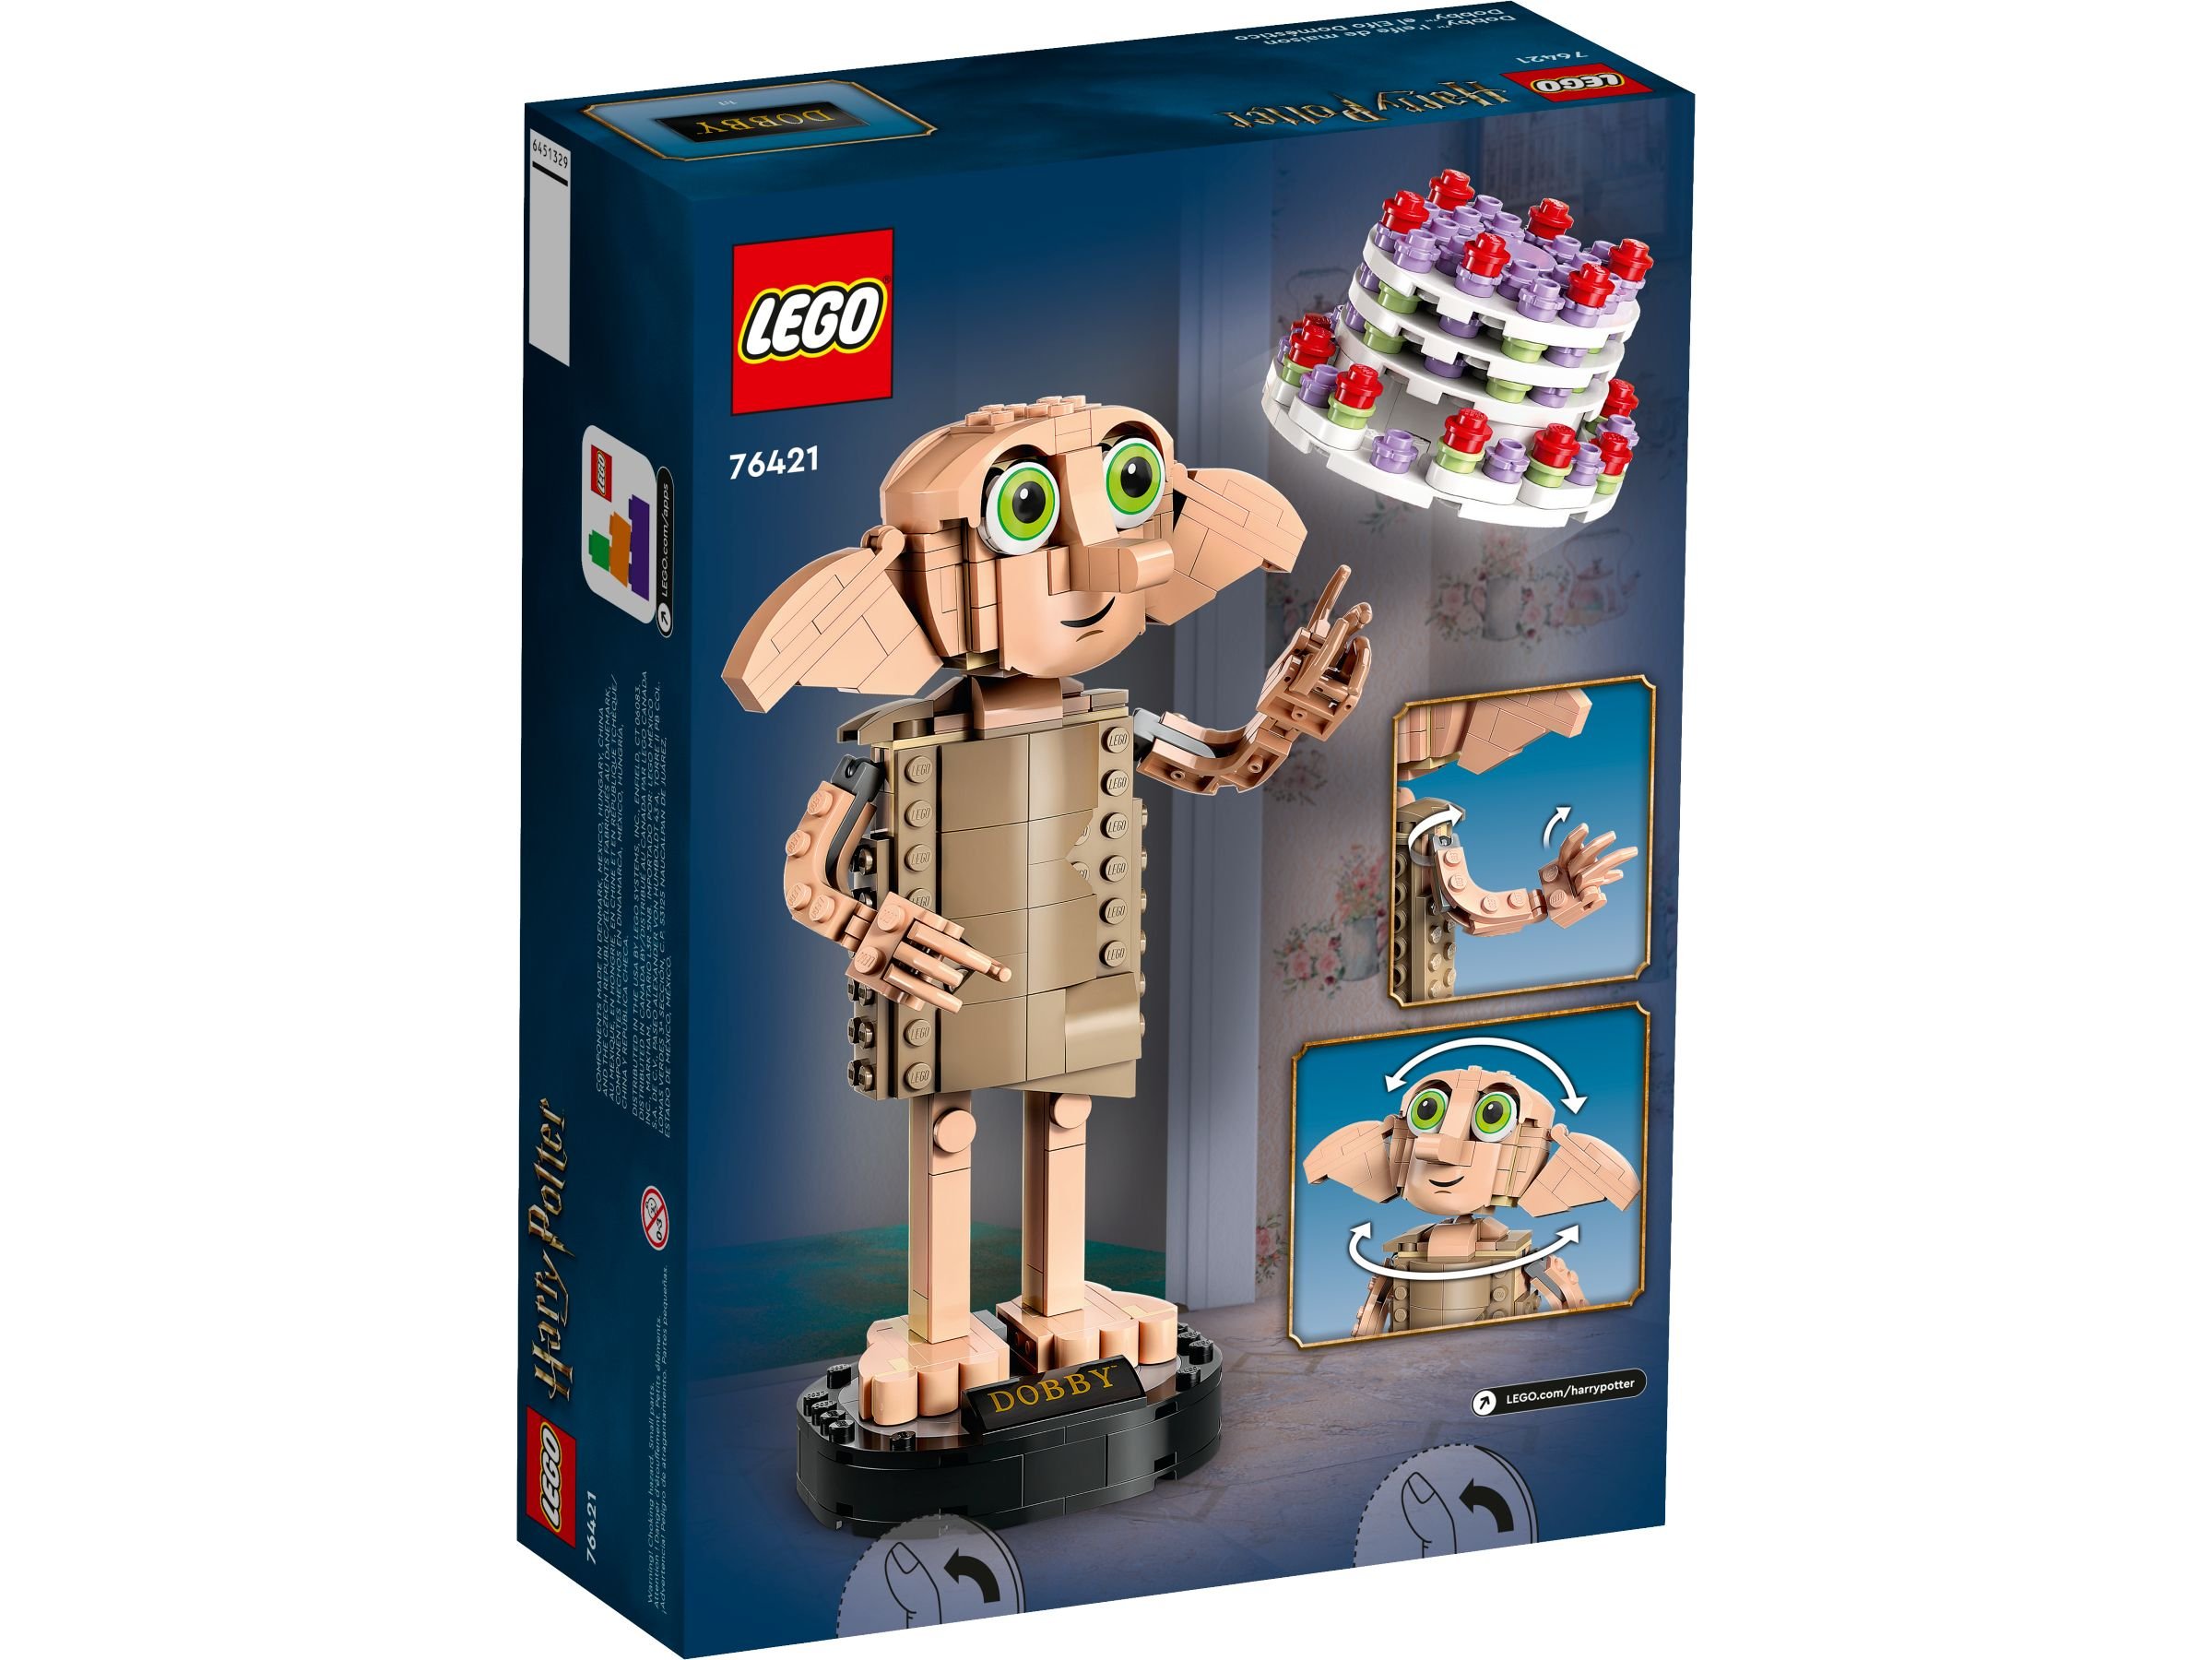 LEGO Harry Potter 76421 Dobby™ der Hauself LEGO_76421_Box5_v39.jpg